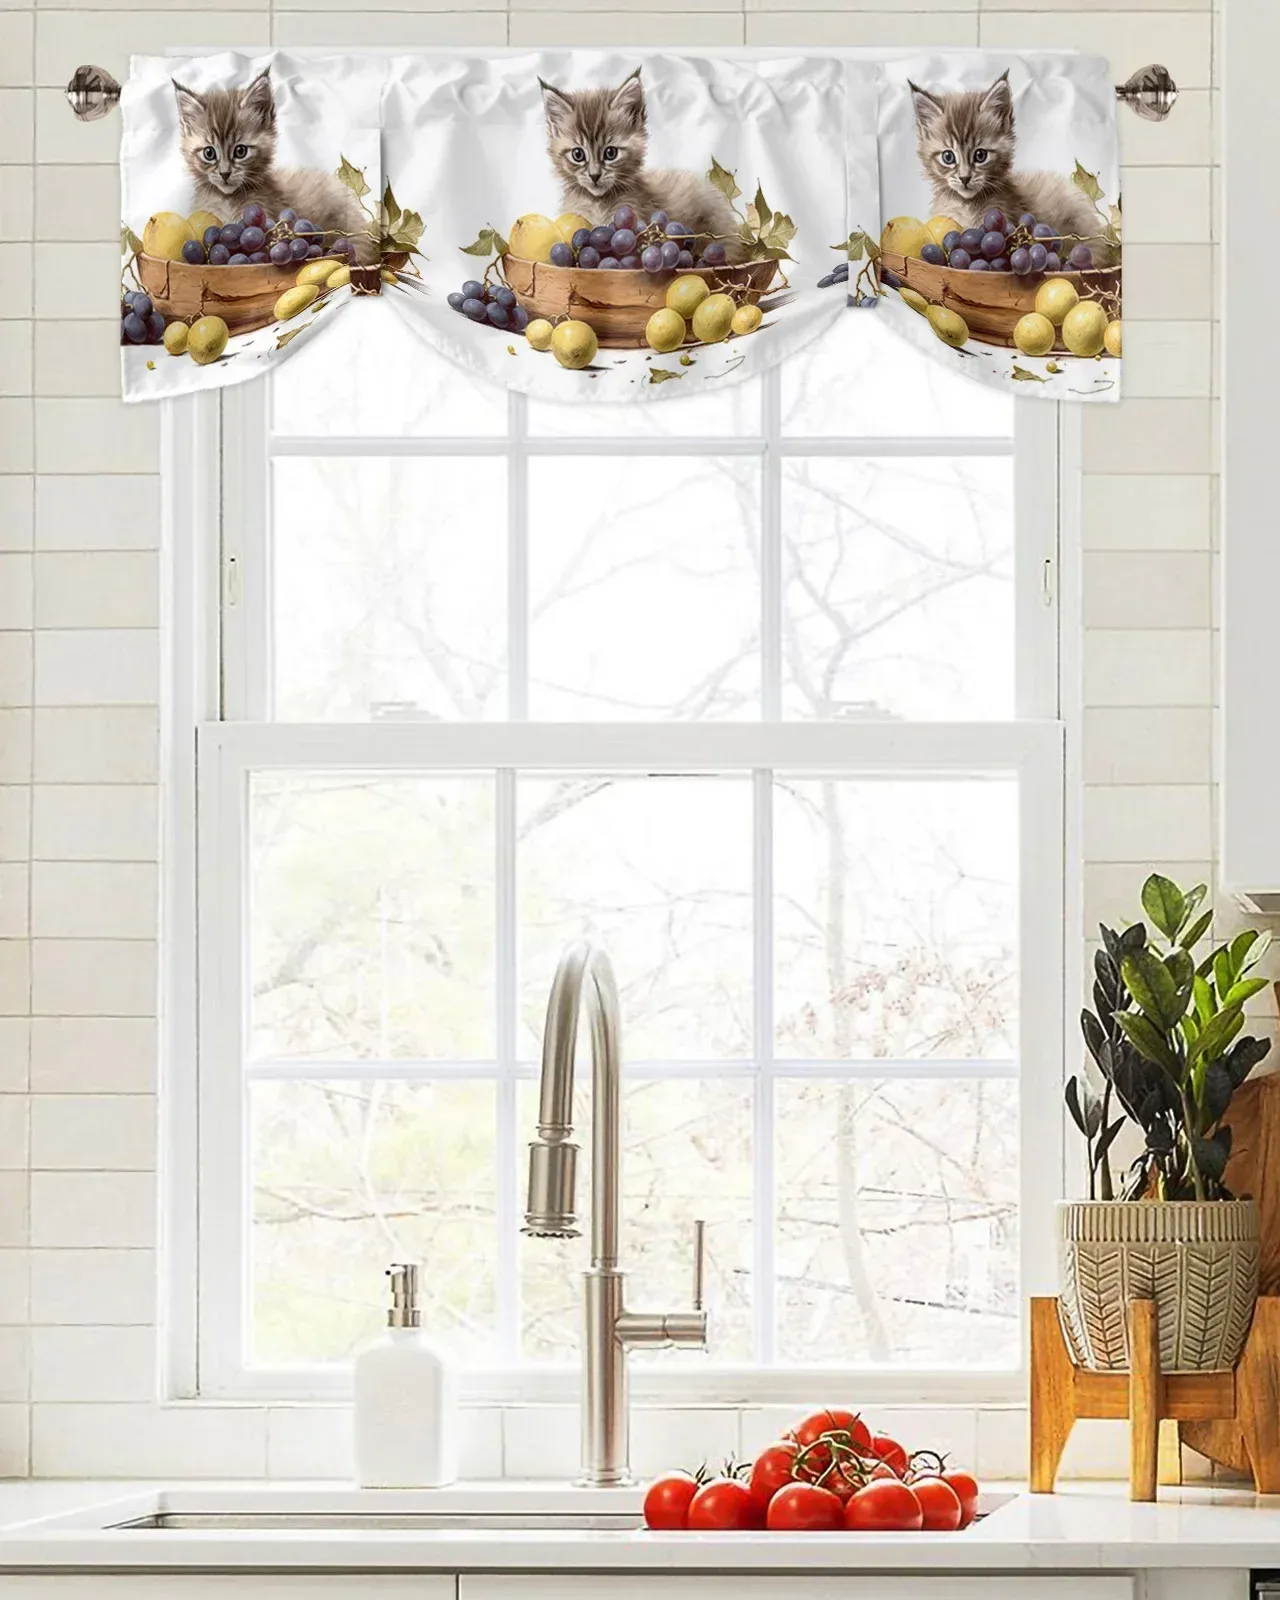 Rideaux chaton fruits raisins fenêtre rideau salon armoires de cuisine Tieup cantonnière tringle à rideau cantonnière de poche